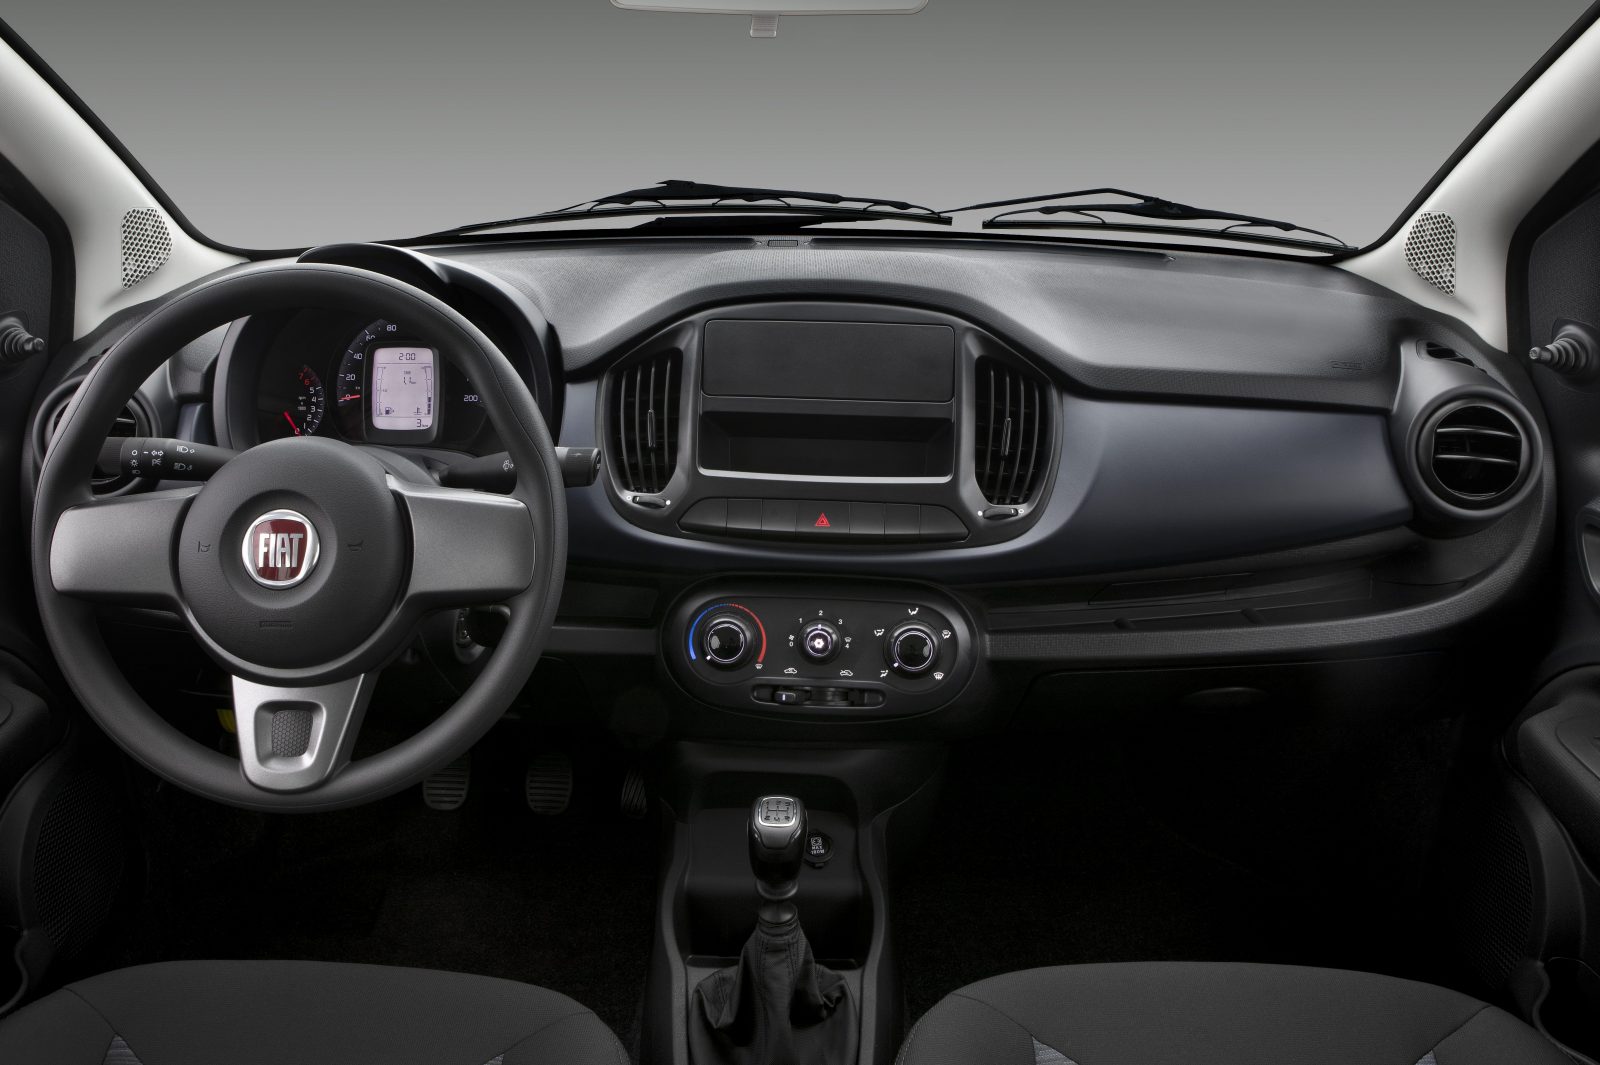 Fiat Uno 2019